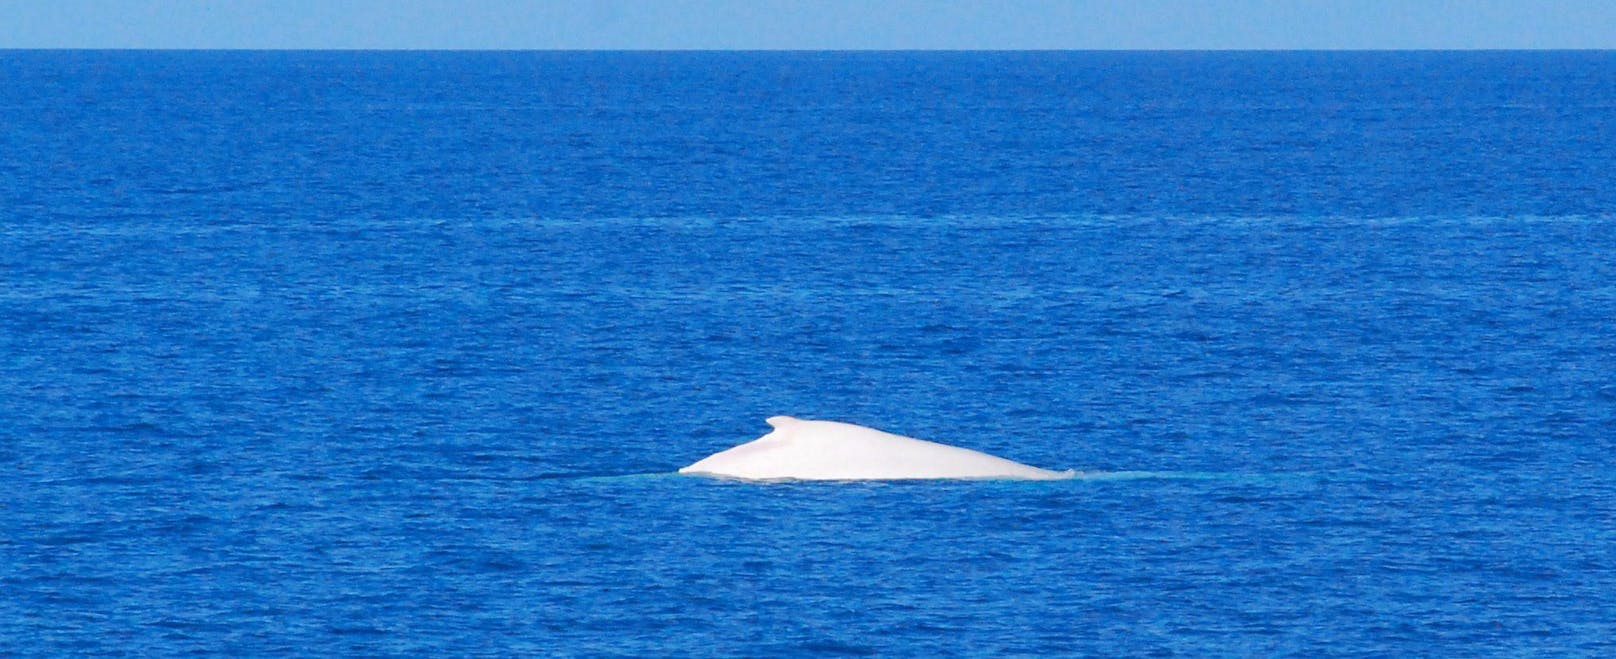 Die Regierung von Queensland (Australien) stellte den Wal unter besonderen Schutz, um ihn vor zuviel Publicity zu schützen.